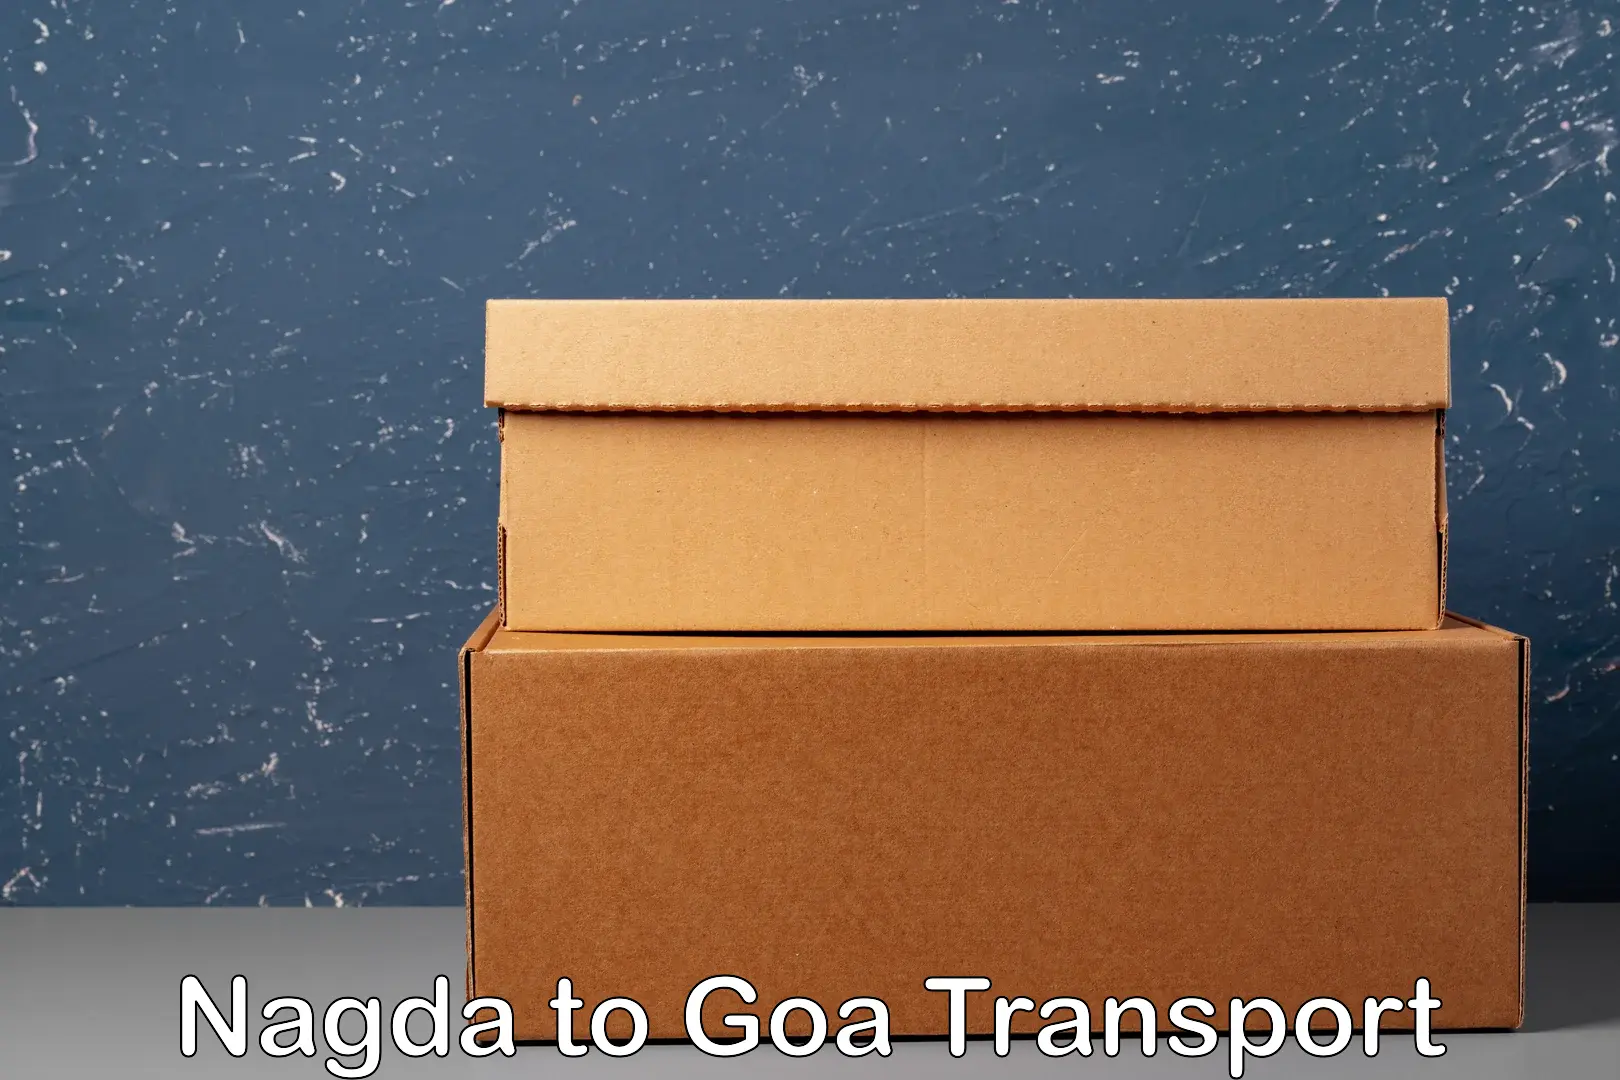 Door to door transport services Nagda to Panaji